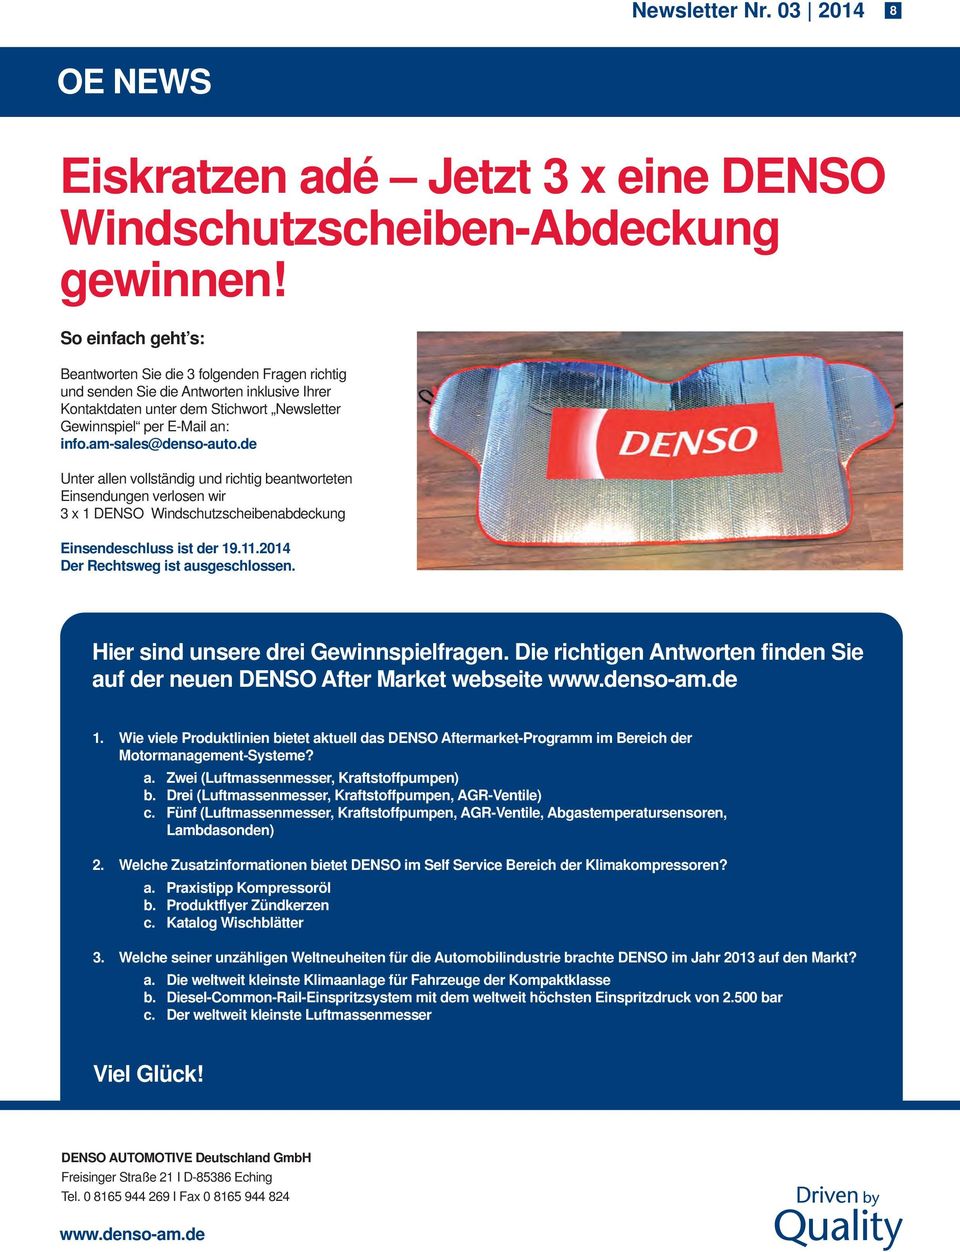 am-sales@denso-auto.de Unter allen vollständig und richtig beantworteten Einsendungen verlosen wir 3 x 1 DENSO Windschutzscheibenabdeckung Einsendeschluss ist der 19.11.